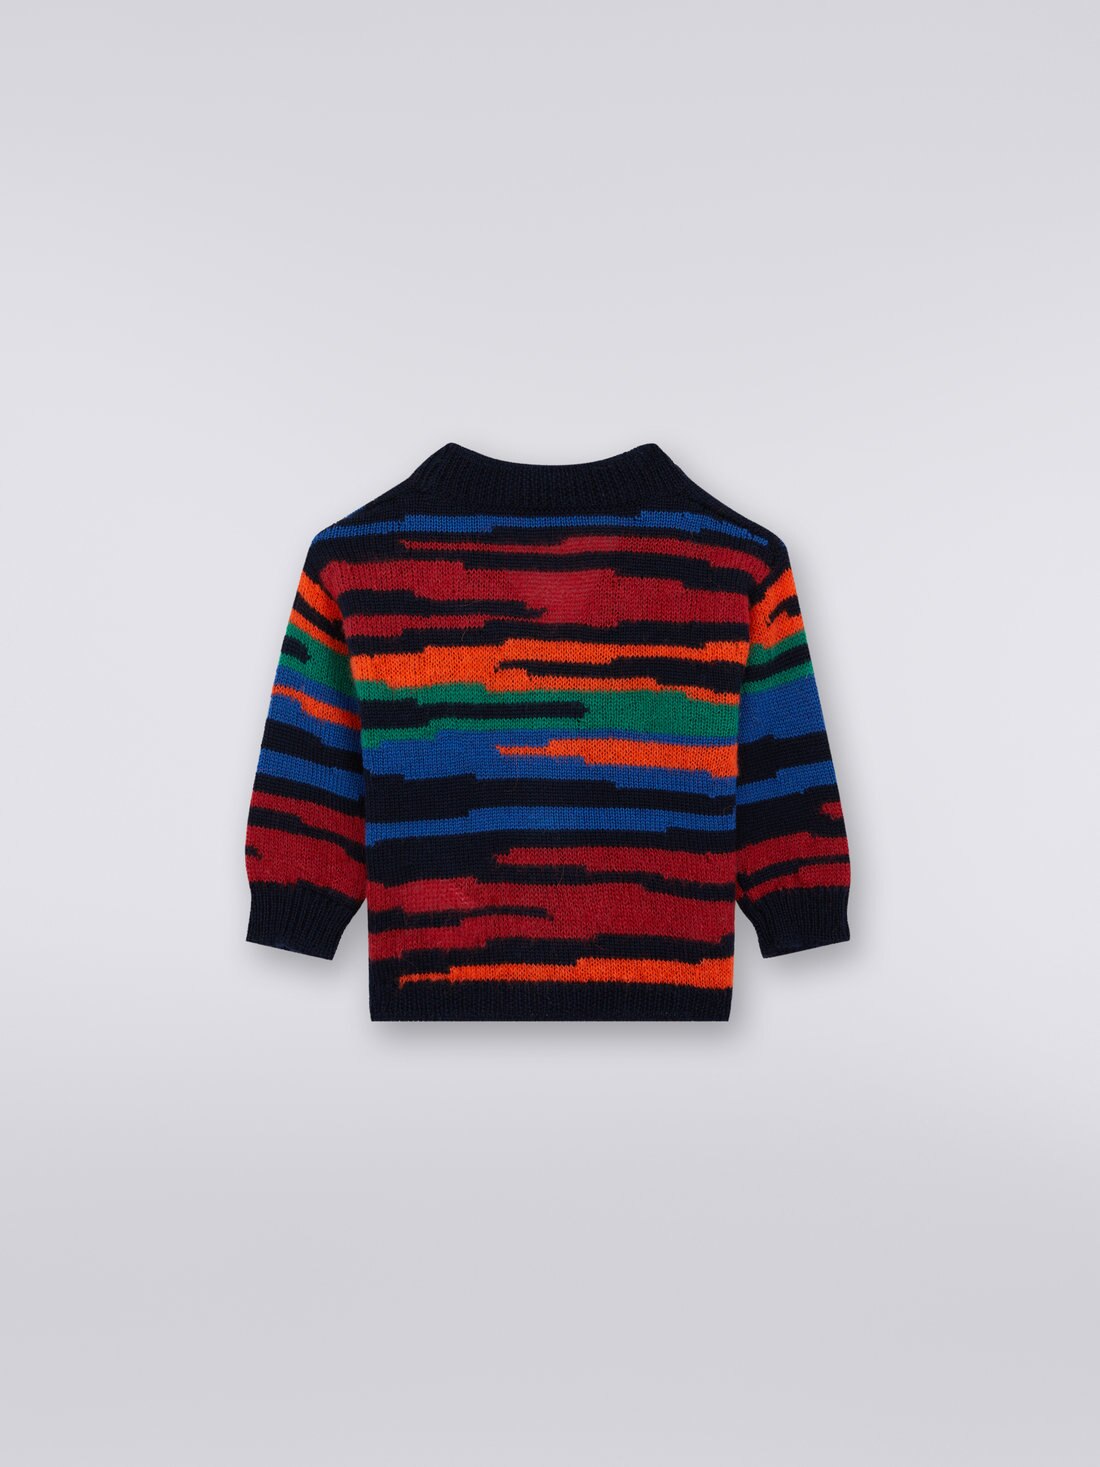 Slub wool knit cardigan, Multicoloured  - KS23WM03BV00E3SM923 - 1